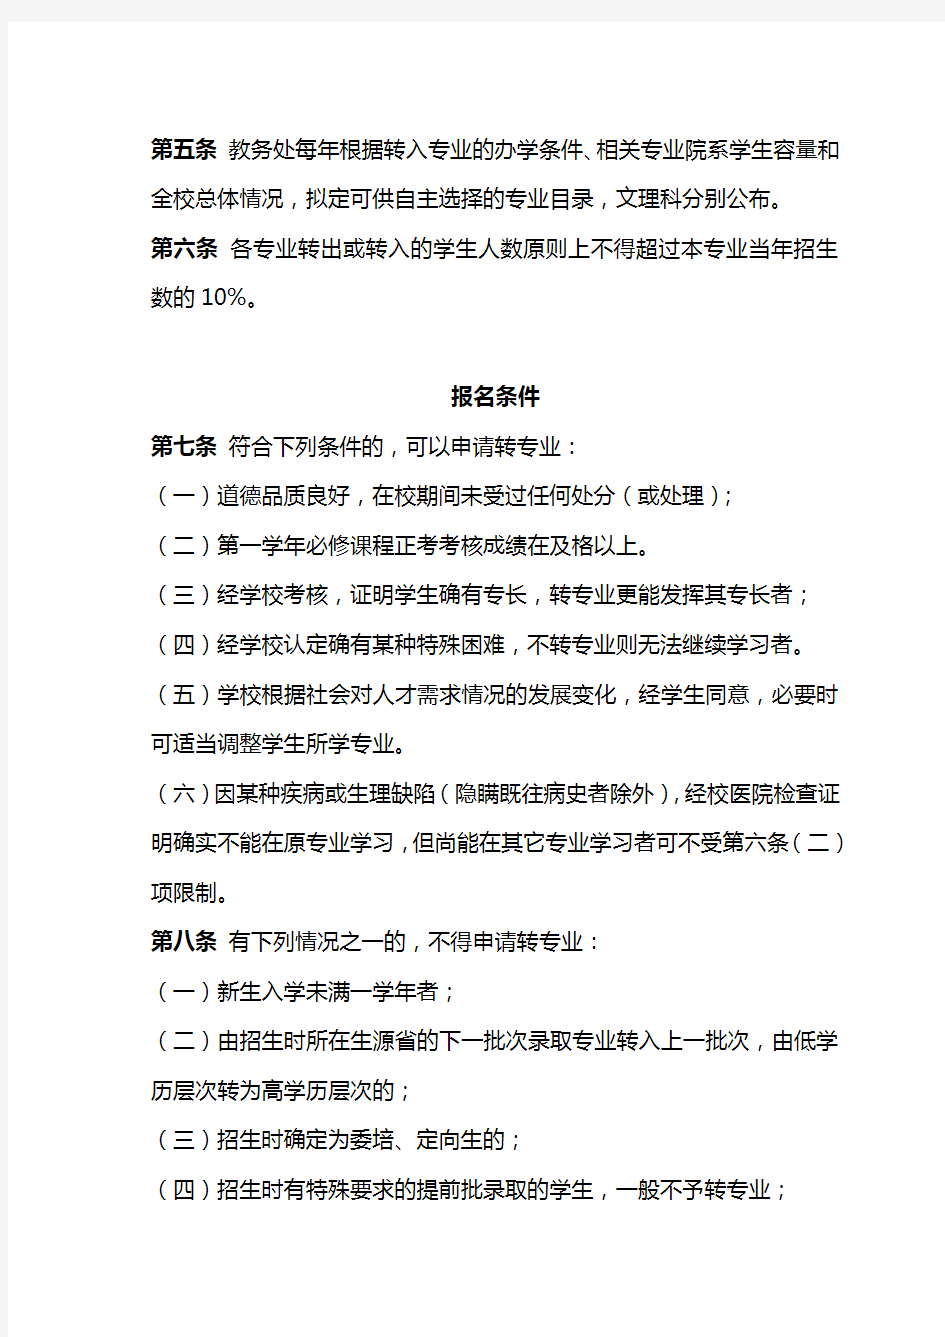 重庆医科大学本科生转专业实施细则(2015年3月修订)